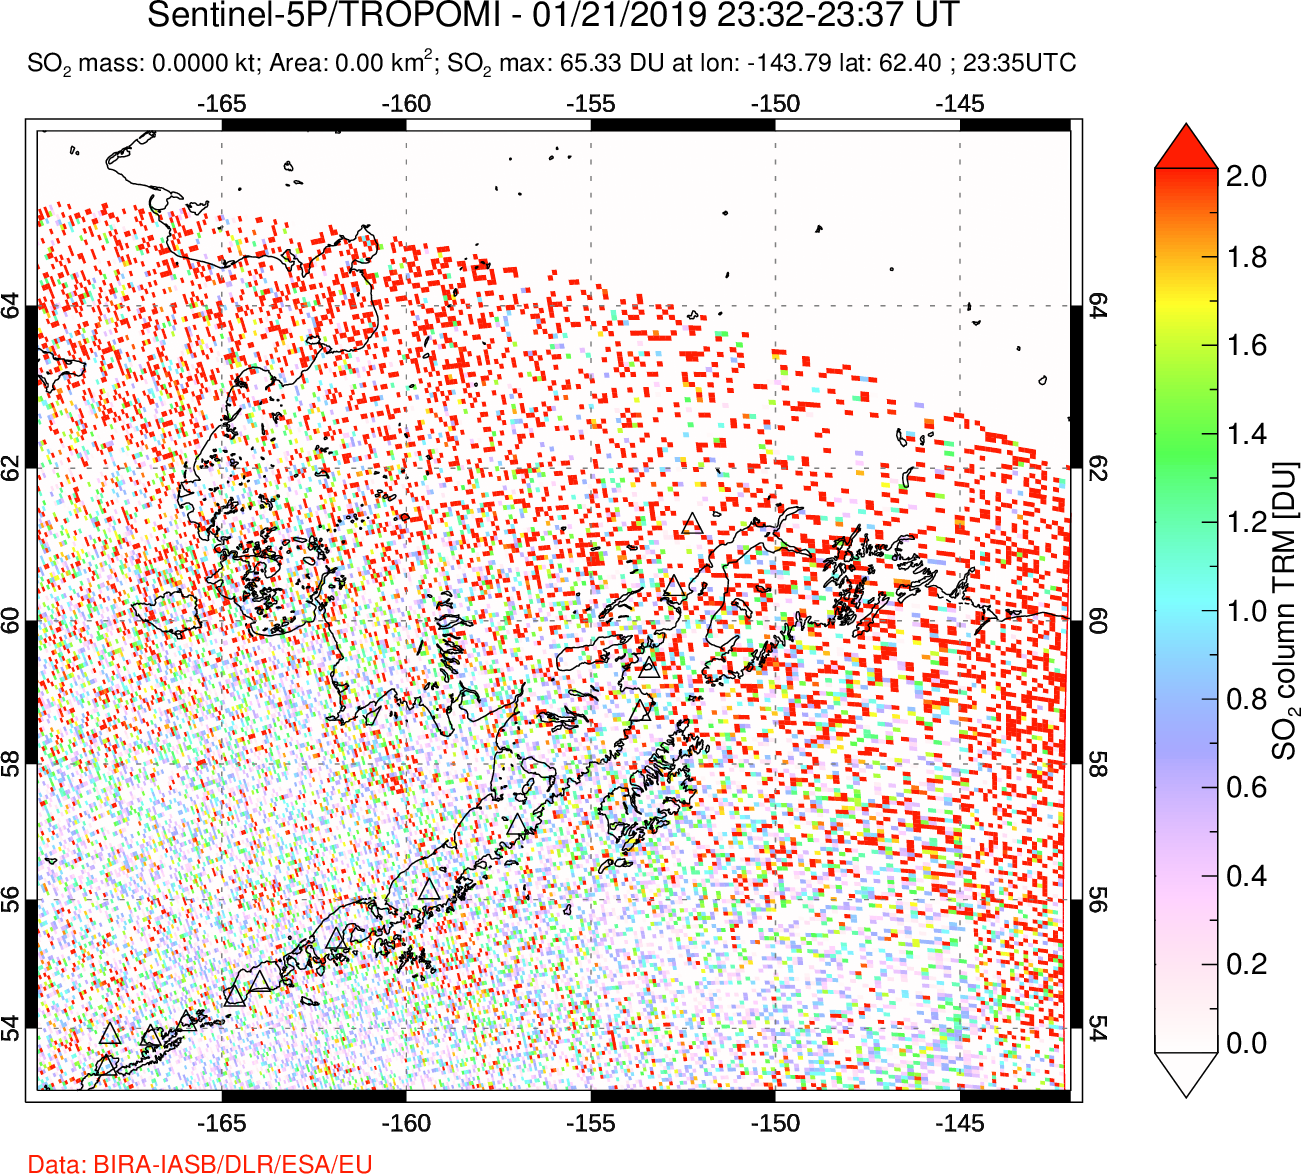 A sulfur dioxide image over Alaska, USA on Jan 21, 2019.